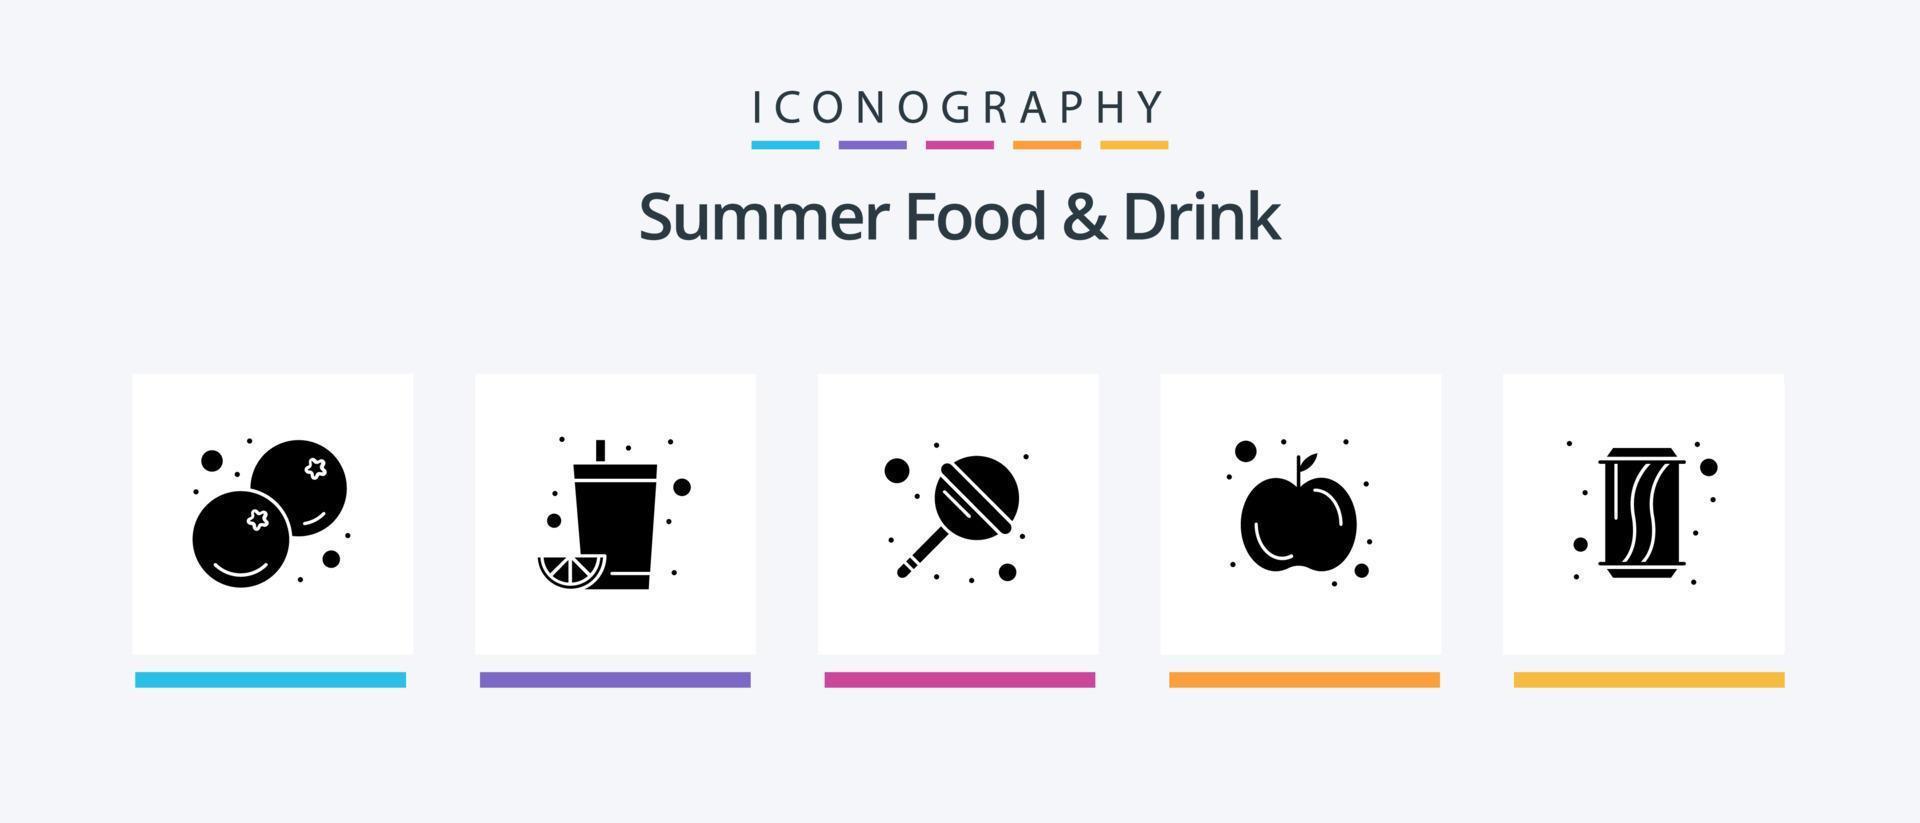 paquete de iconos de glifo 5 de comida y bebida de verano que incluye lata. frutas zumo de naranja. Fruta. dulce. diseño de iconos creativos vector